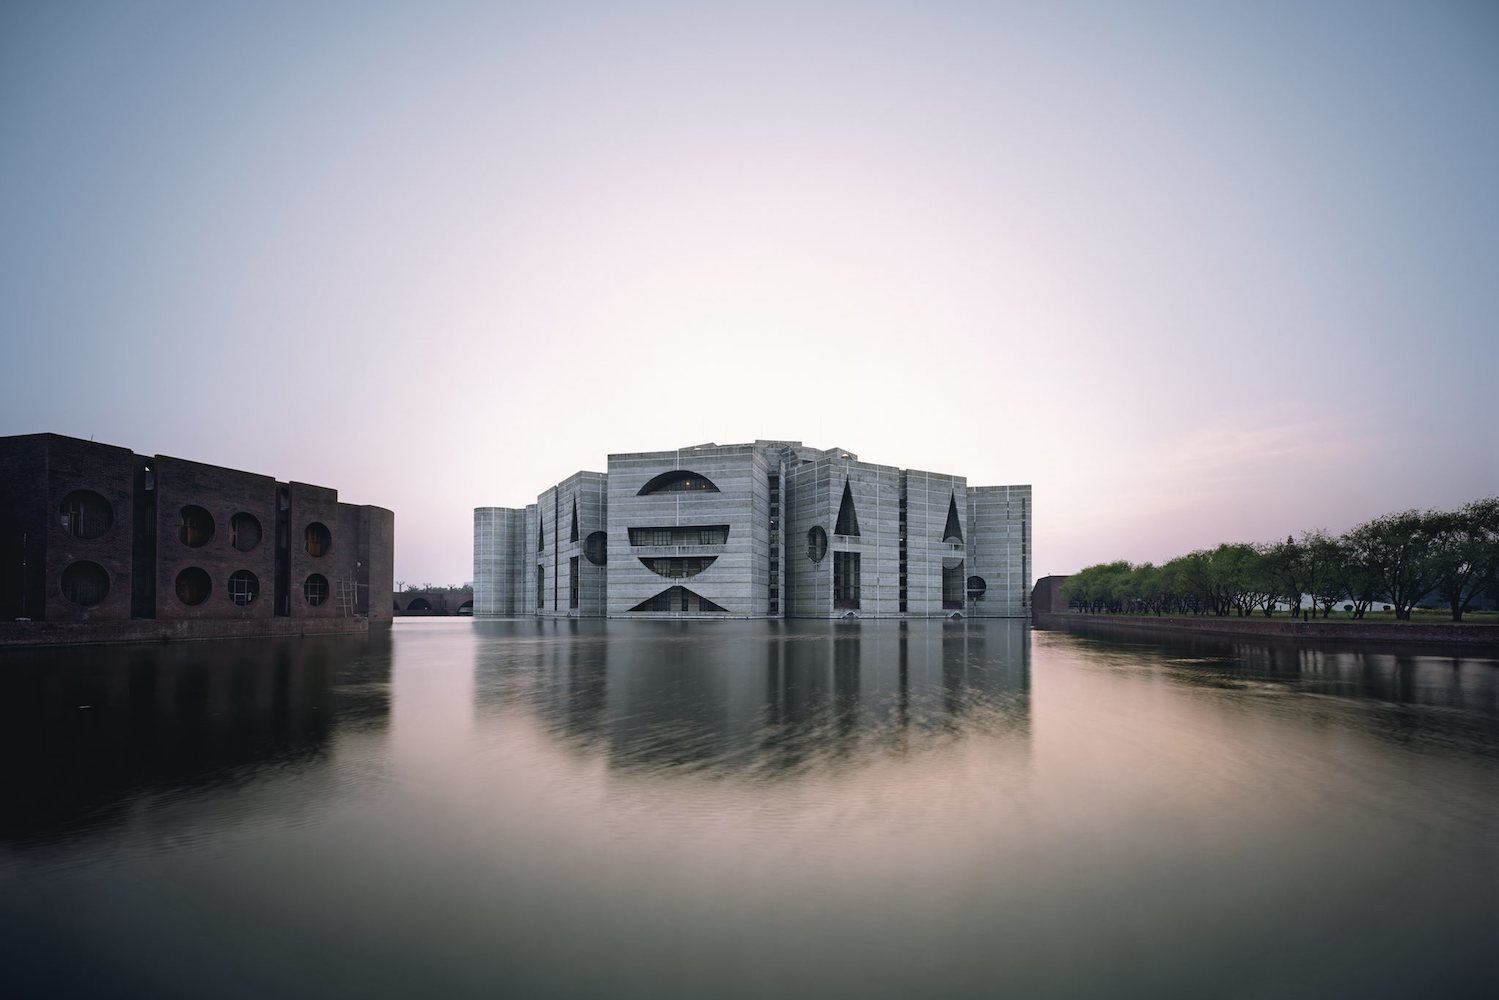 Asamblea Nacional de Bangladesh, de Louis Kahn.